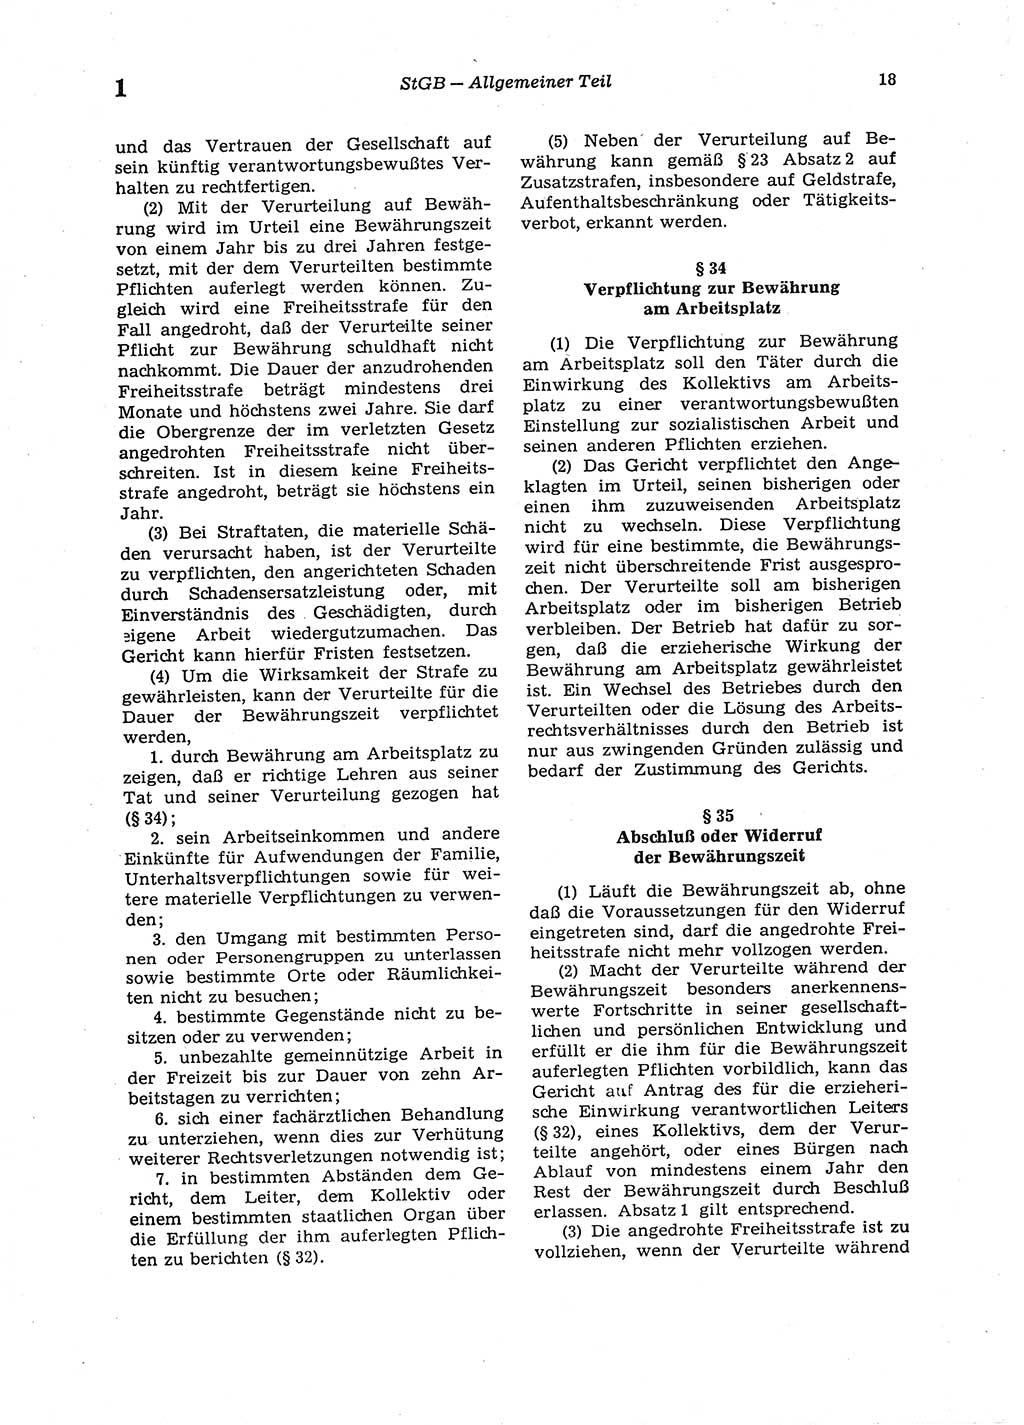 Strafgesetzbuch (StGB) der Deutschen Demokratischen Republik (DDR) 1987, Seite 18 (StGB DDR 1987, S. 18)